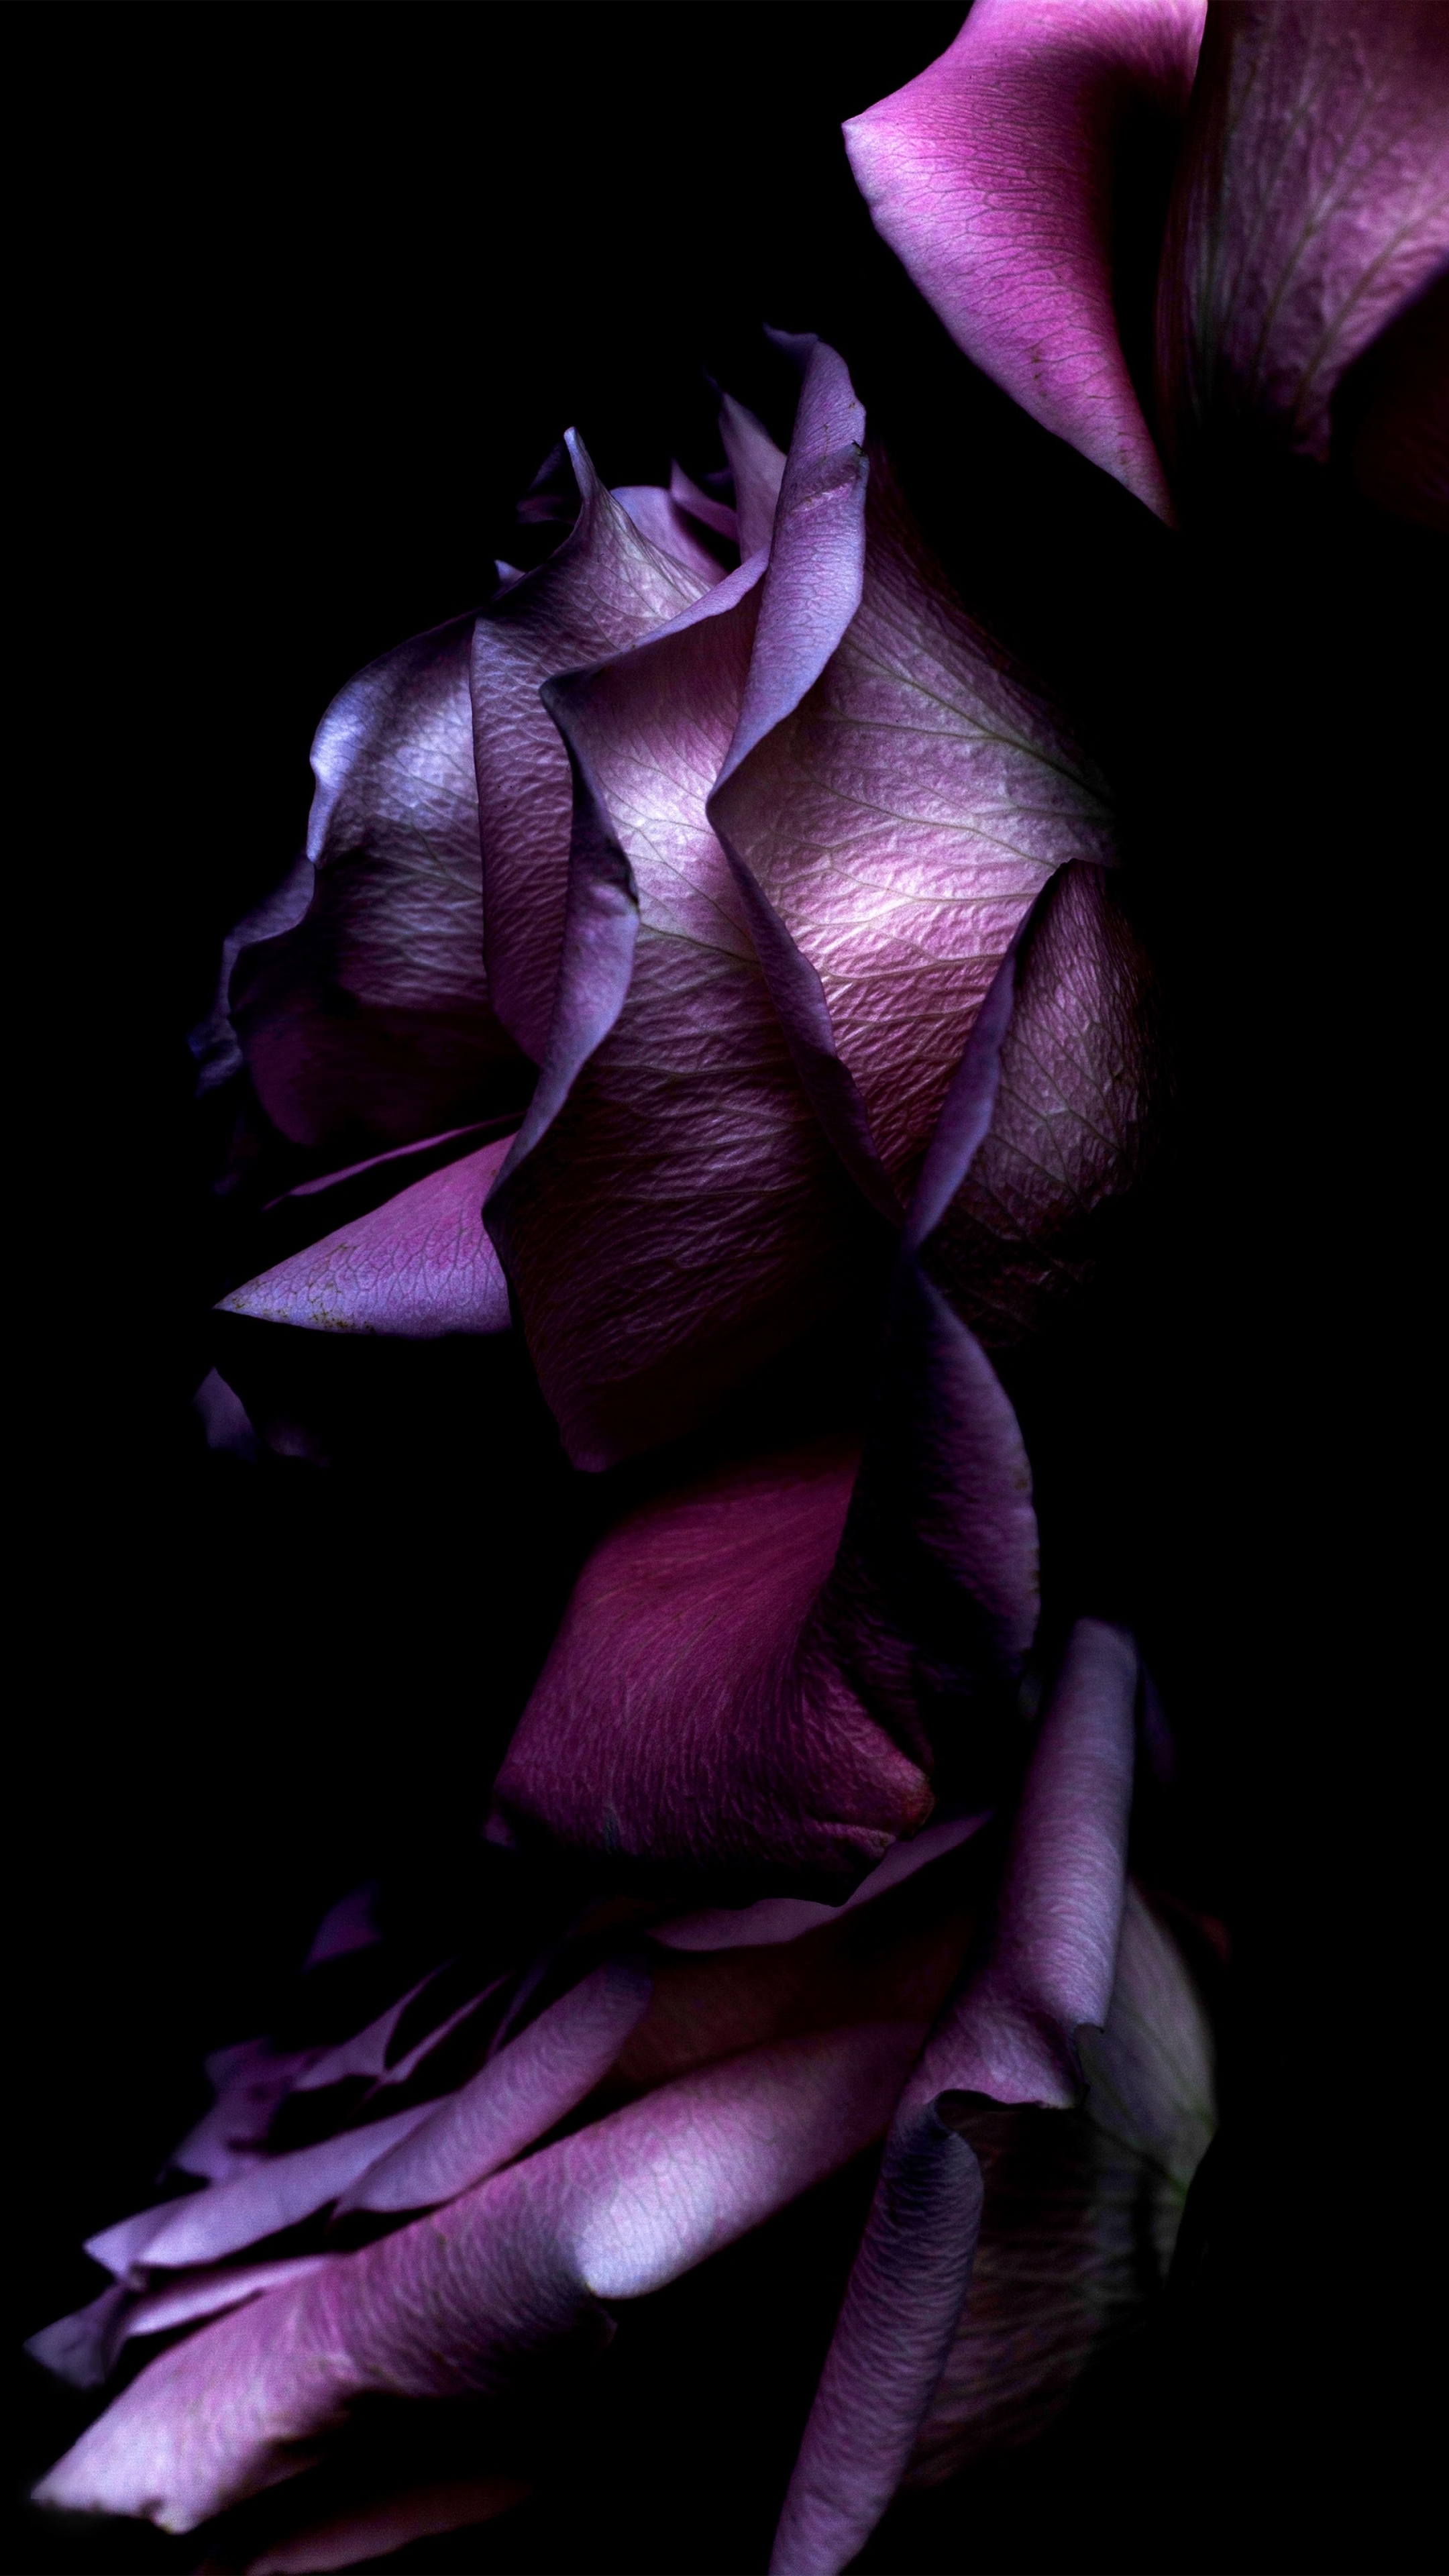 Картинка на телефон вертикальная темная. Темные цветы. Темно фиолетовые цветы. Цветы на темном фоне. Черно фиолетовый цветок.